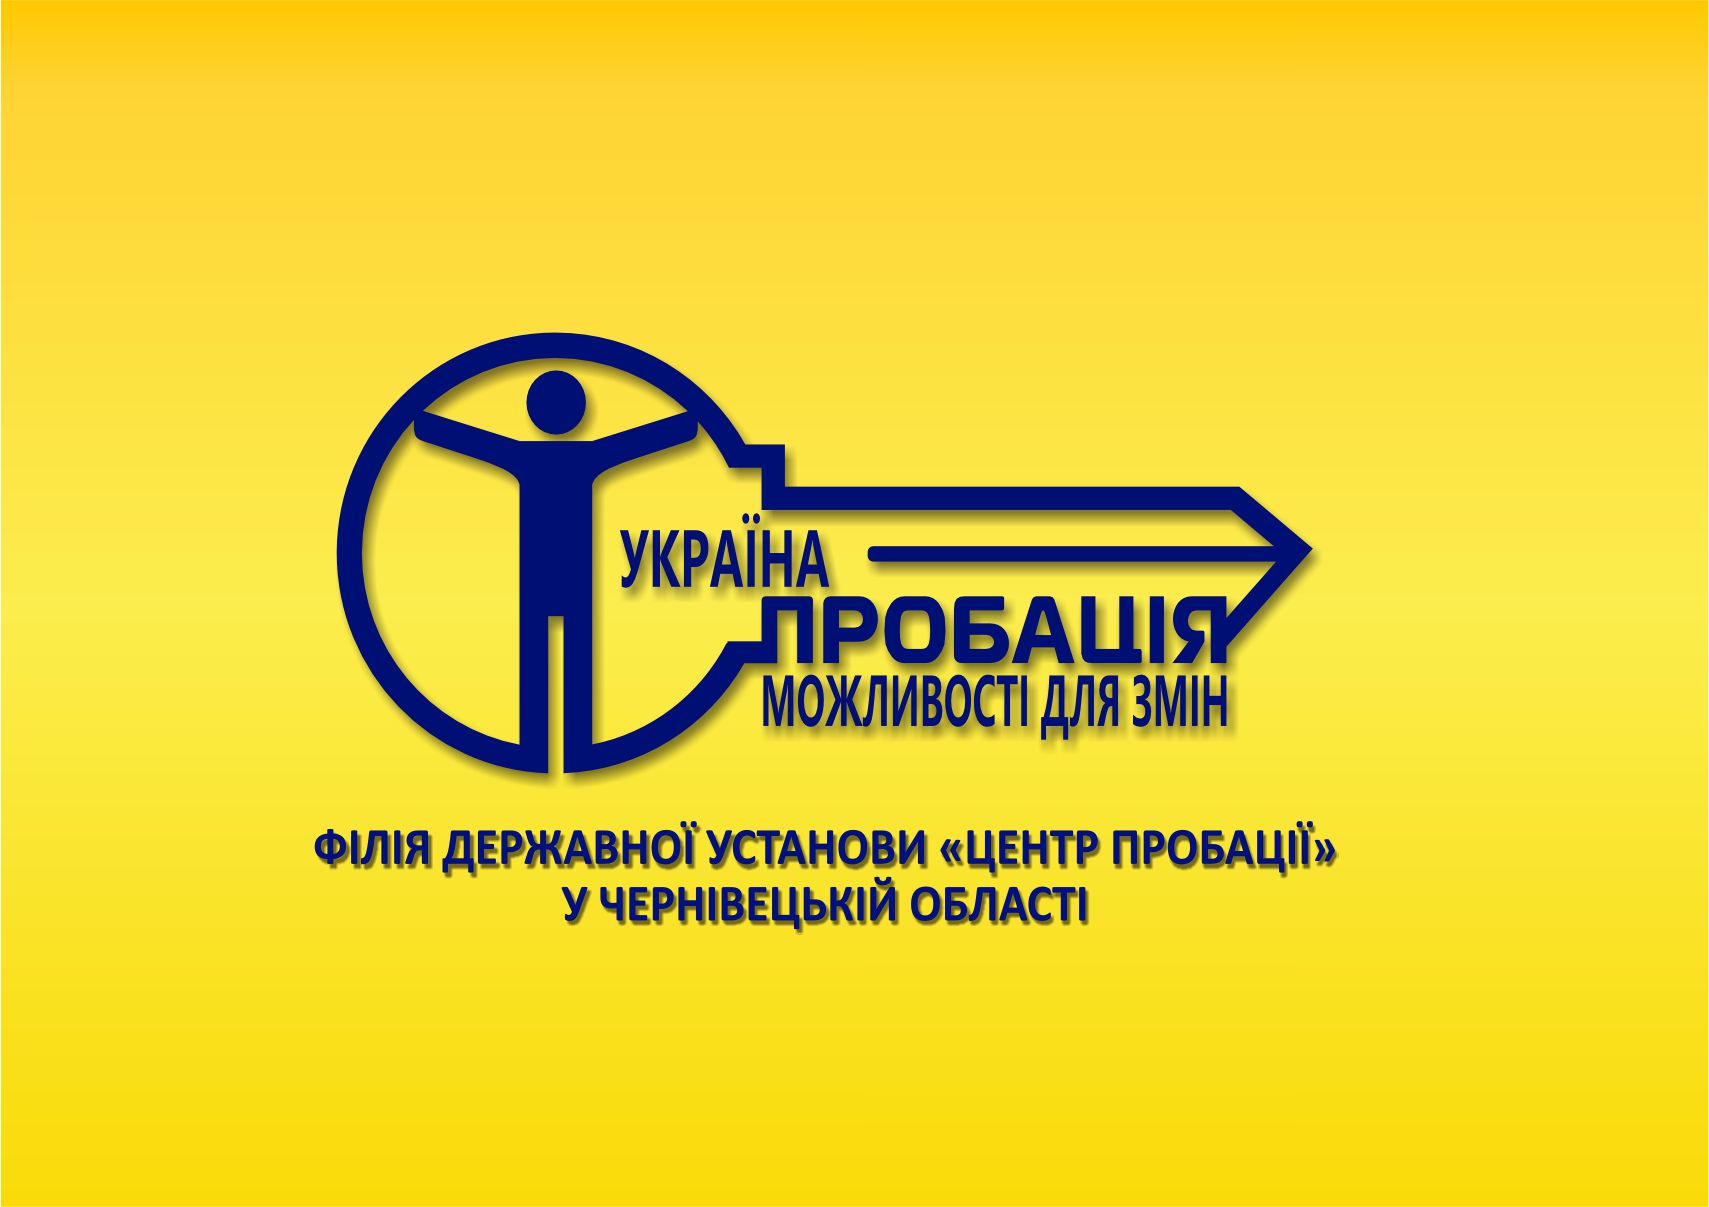 Шевченківський районний відділ “Центру пробації” шукає волонтерів для співпраці та реалізації інформаційних проєктів